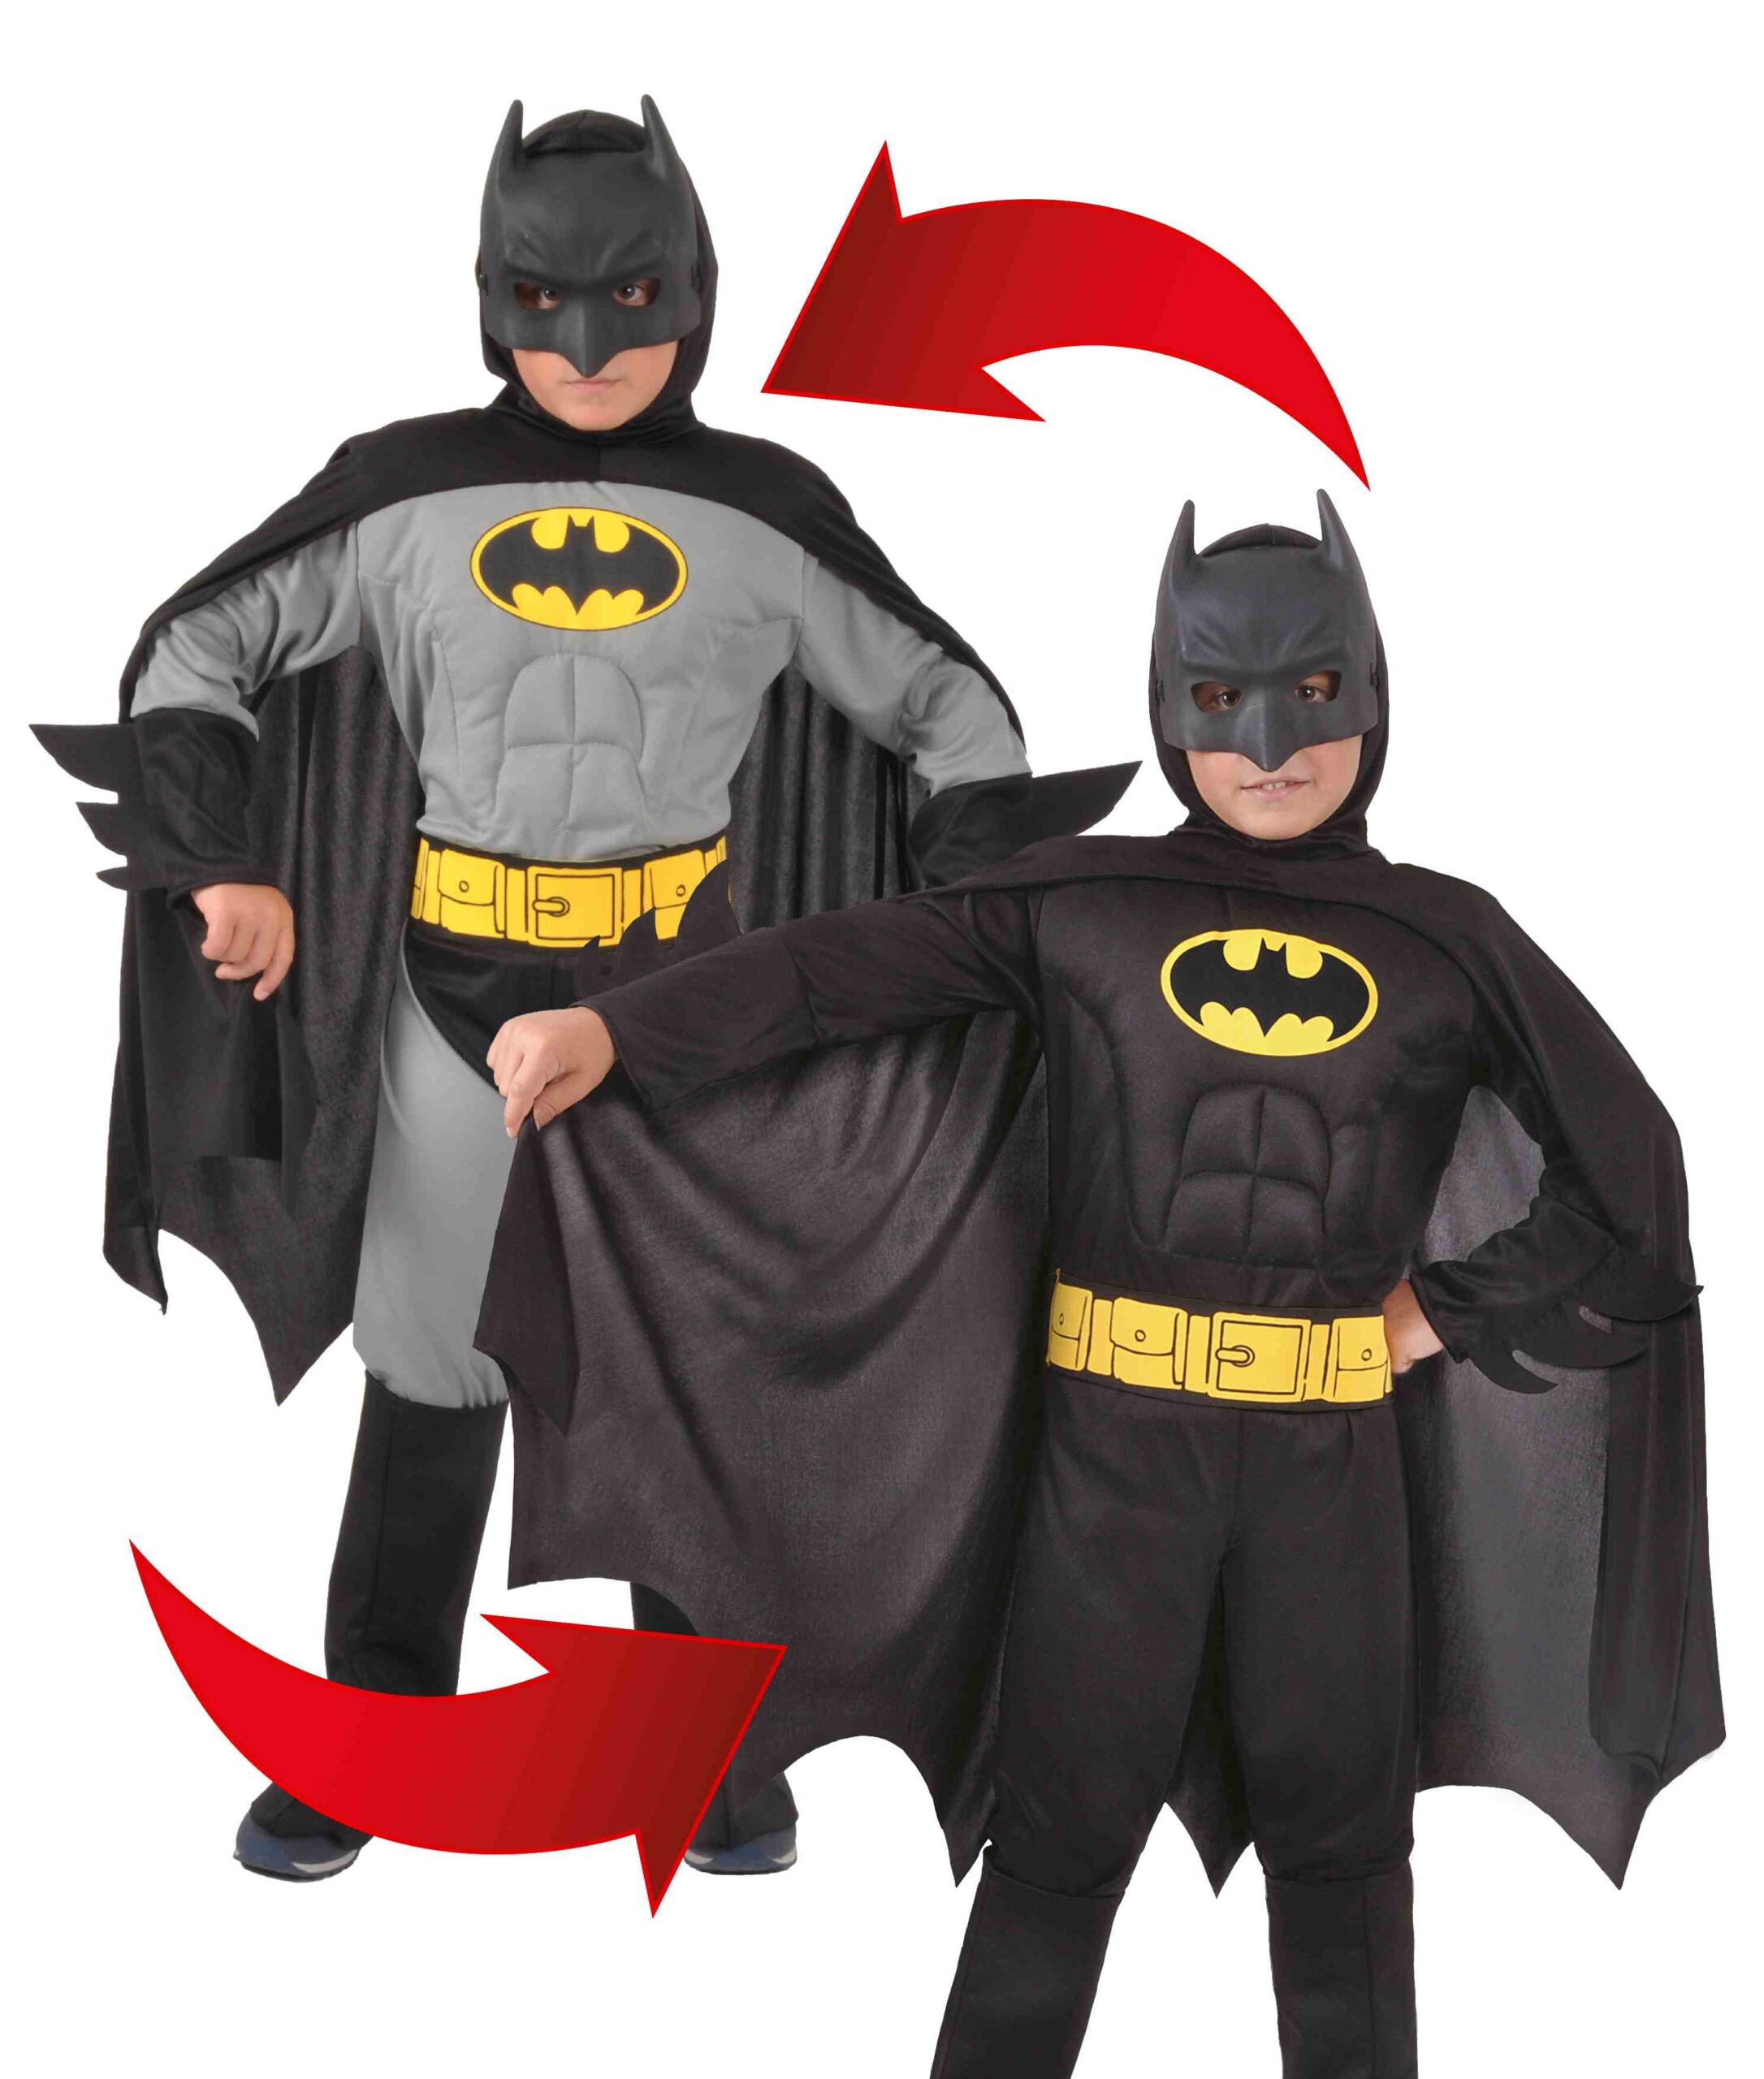 Costume batman reversibile - Toys Center